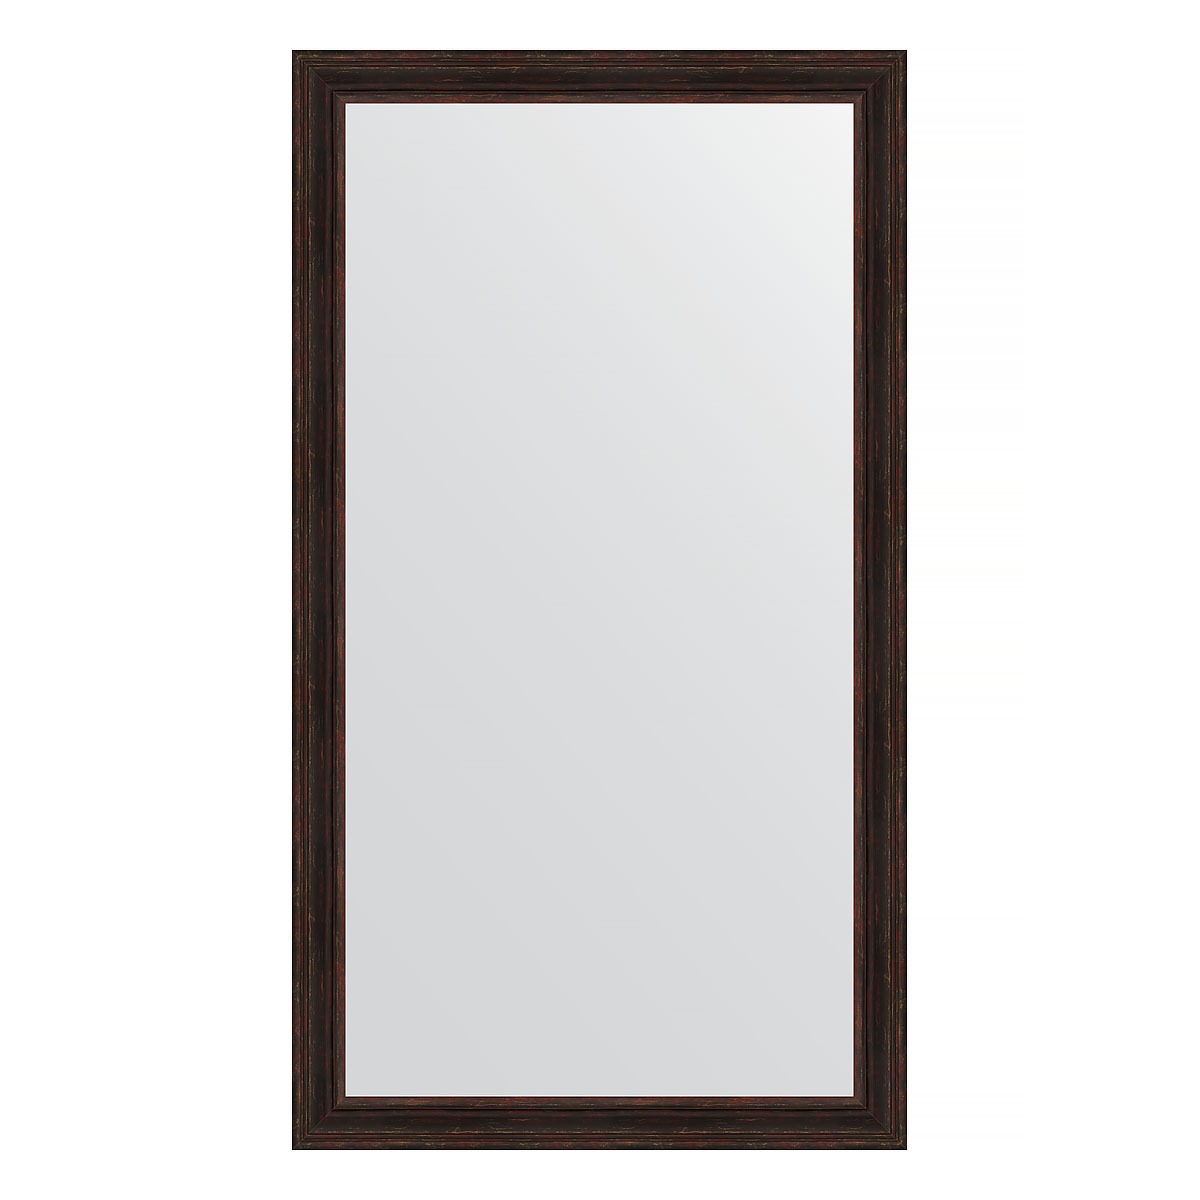 Зеркало напольное в багетной раме Evoform темный прованс 99 мм 114x204 см зеркало напольное с гравировкой в багетной раме темный прованс 99 мм 114x204 см